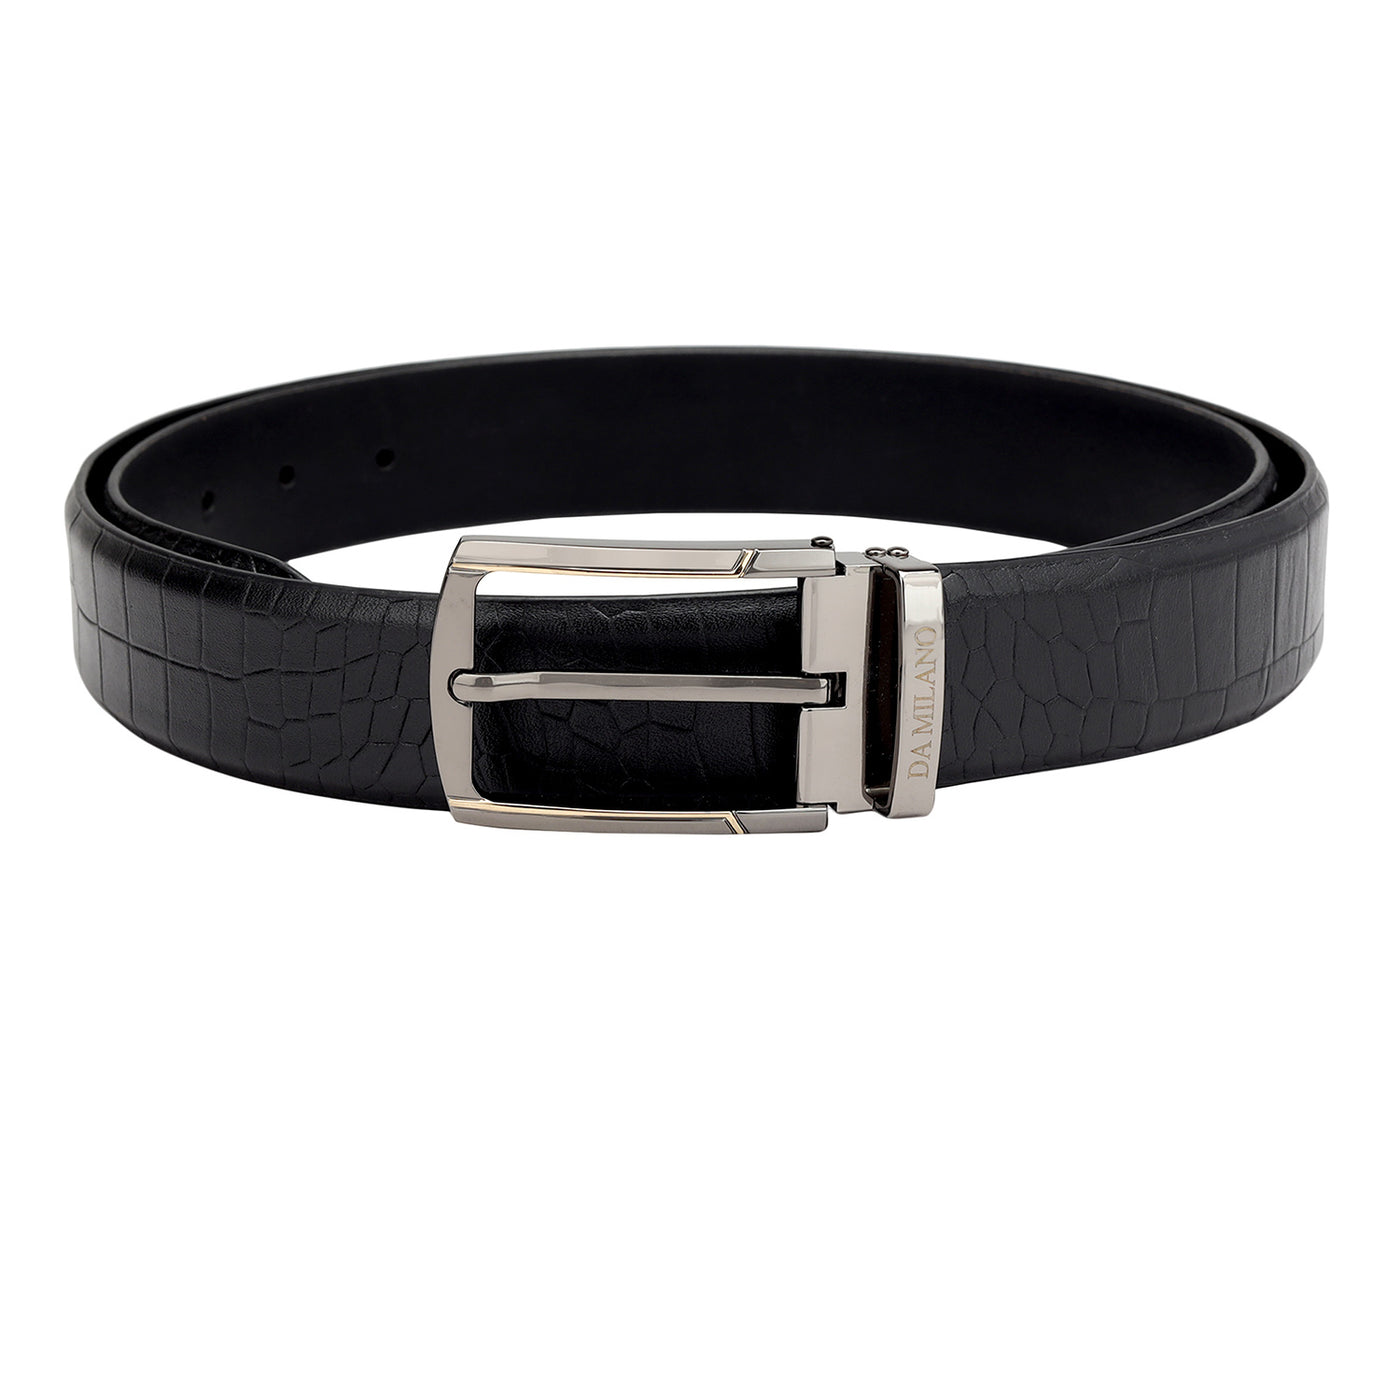 Black Croco Leather Mens Wallet & Belt Gift Set